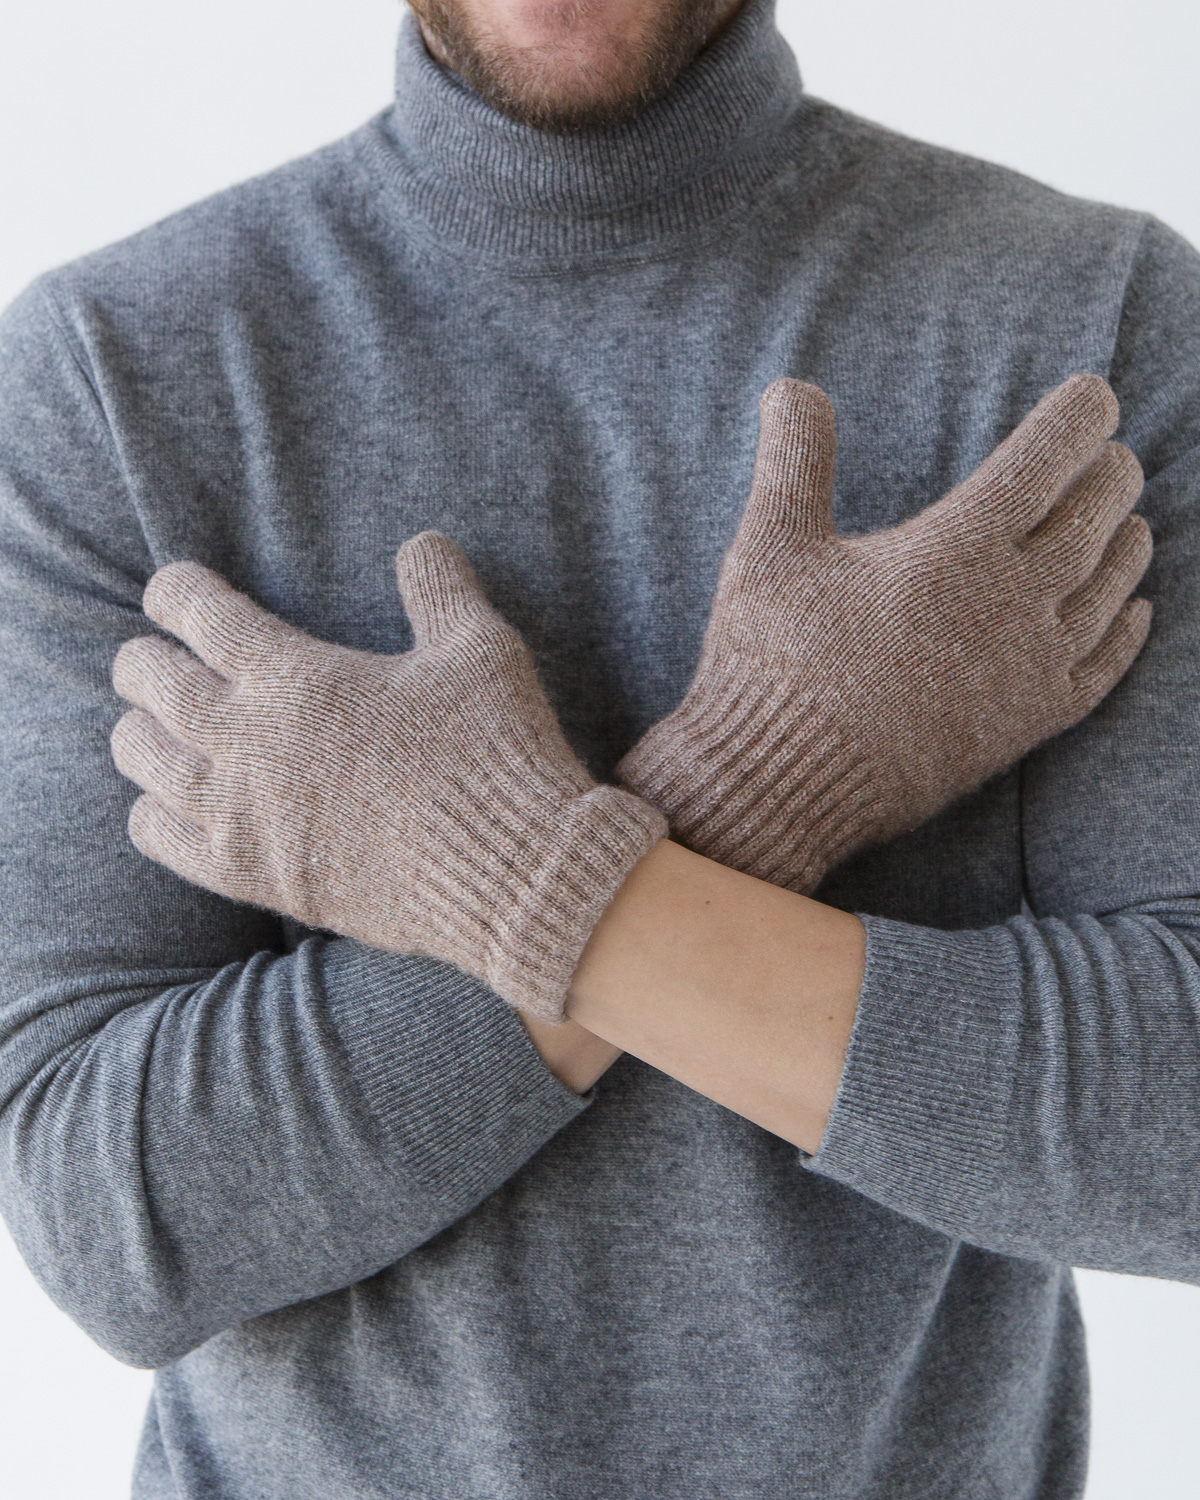 Женские перчатки купить в интернет-магазине Ralf Ringer по выгодной цене